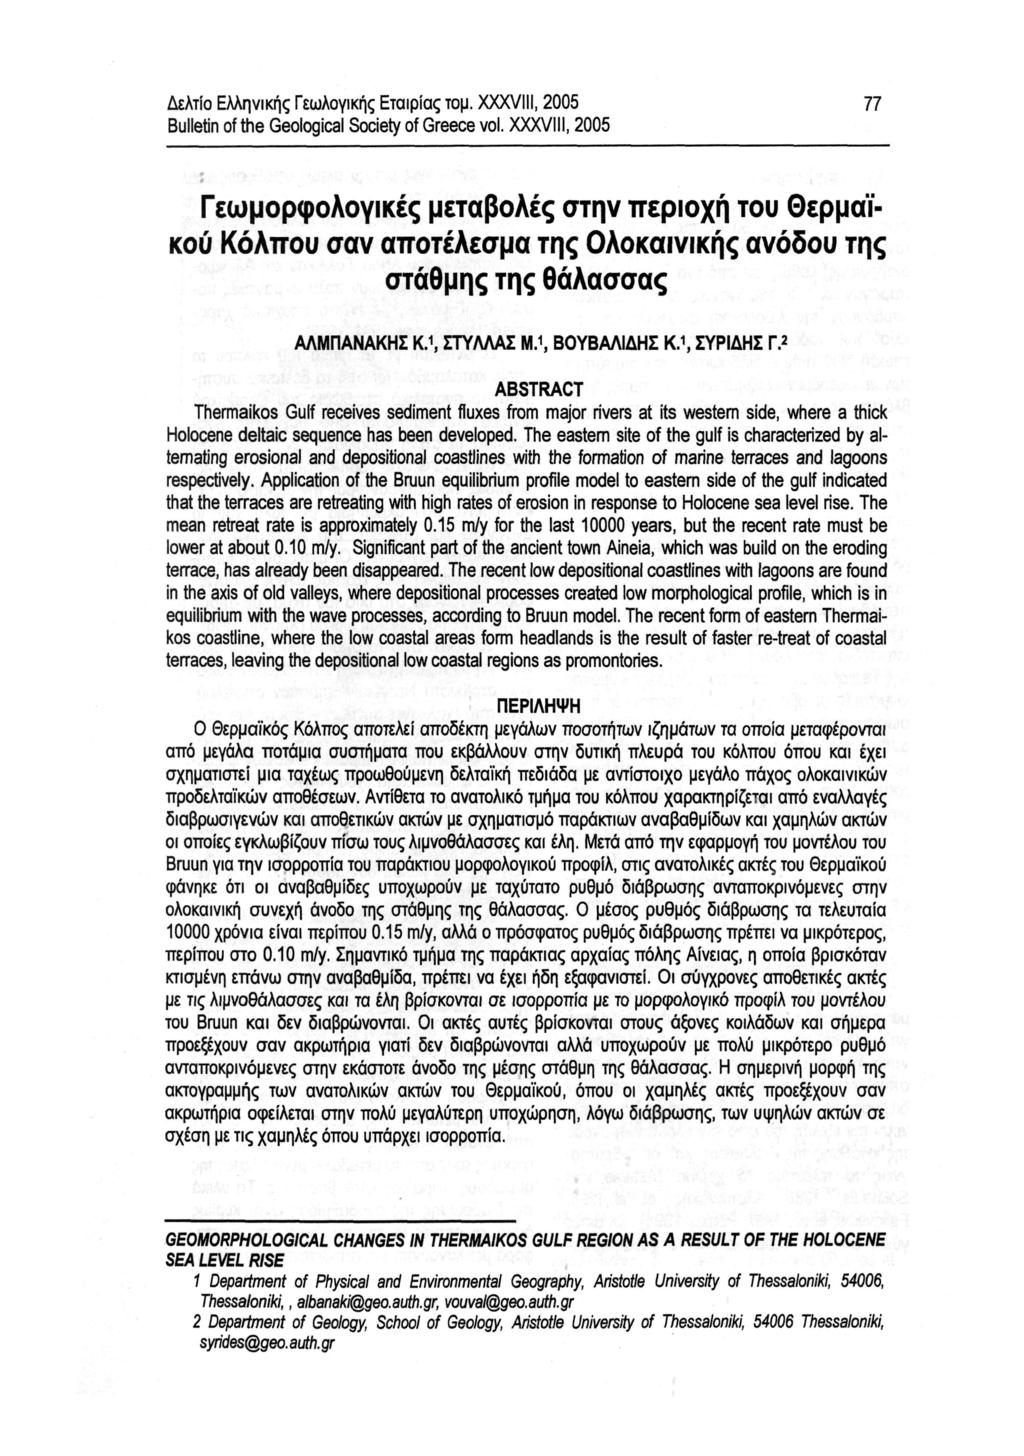 Δελτίο Ελληνικής Γεωλογικής Εταιρίας τομ. XXXVIII, 2005 Bulletin of the Geological Society of Greece vol.